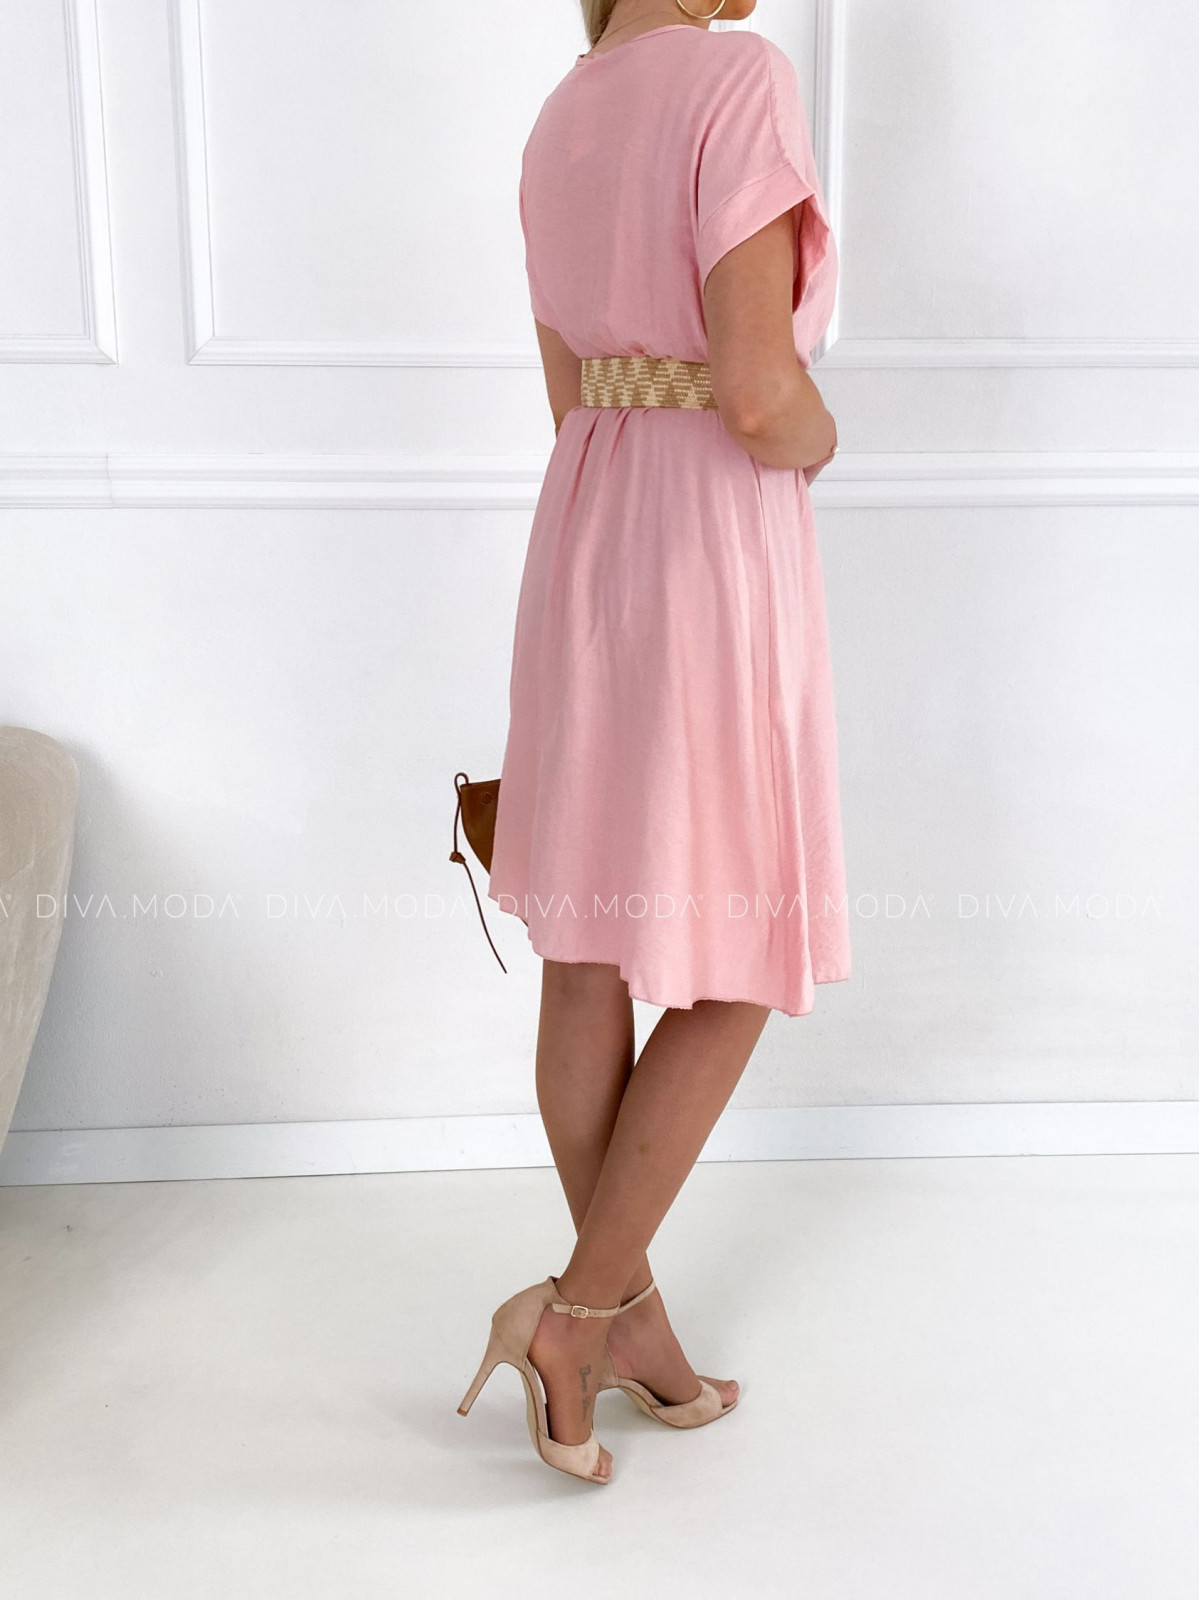 Lehké šaty s páskem charlott světle růžové P 110